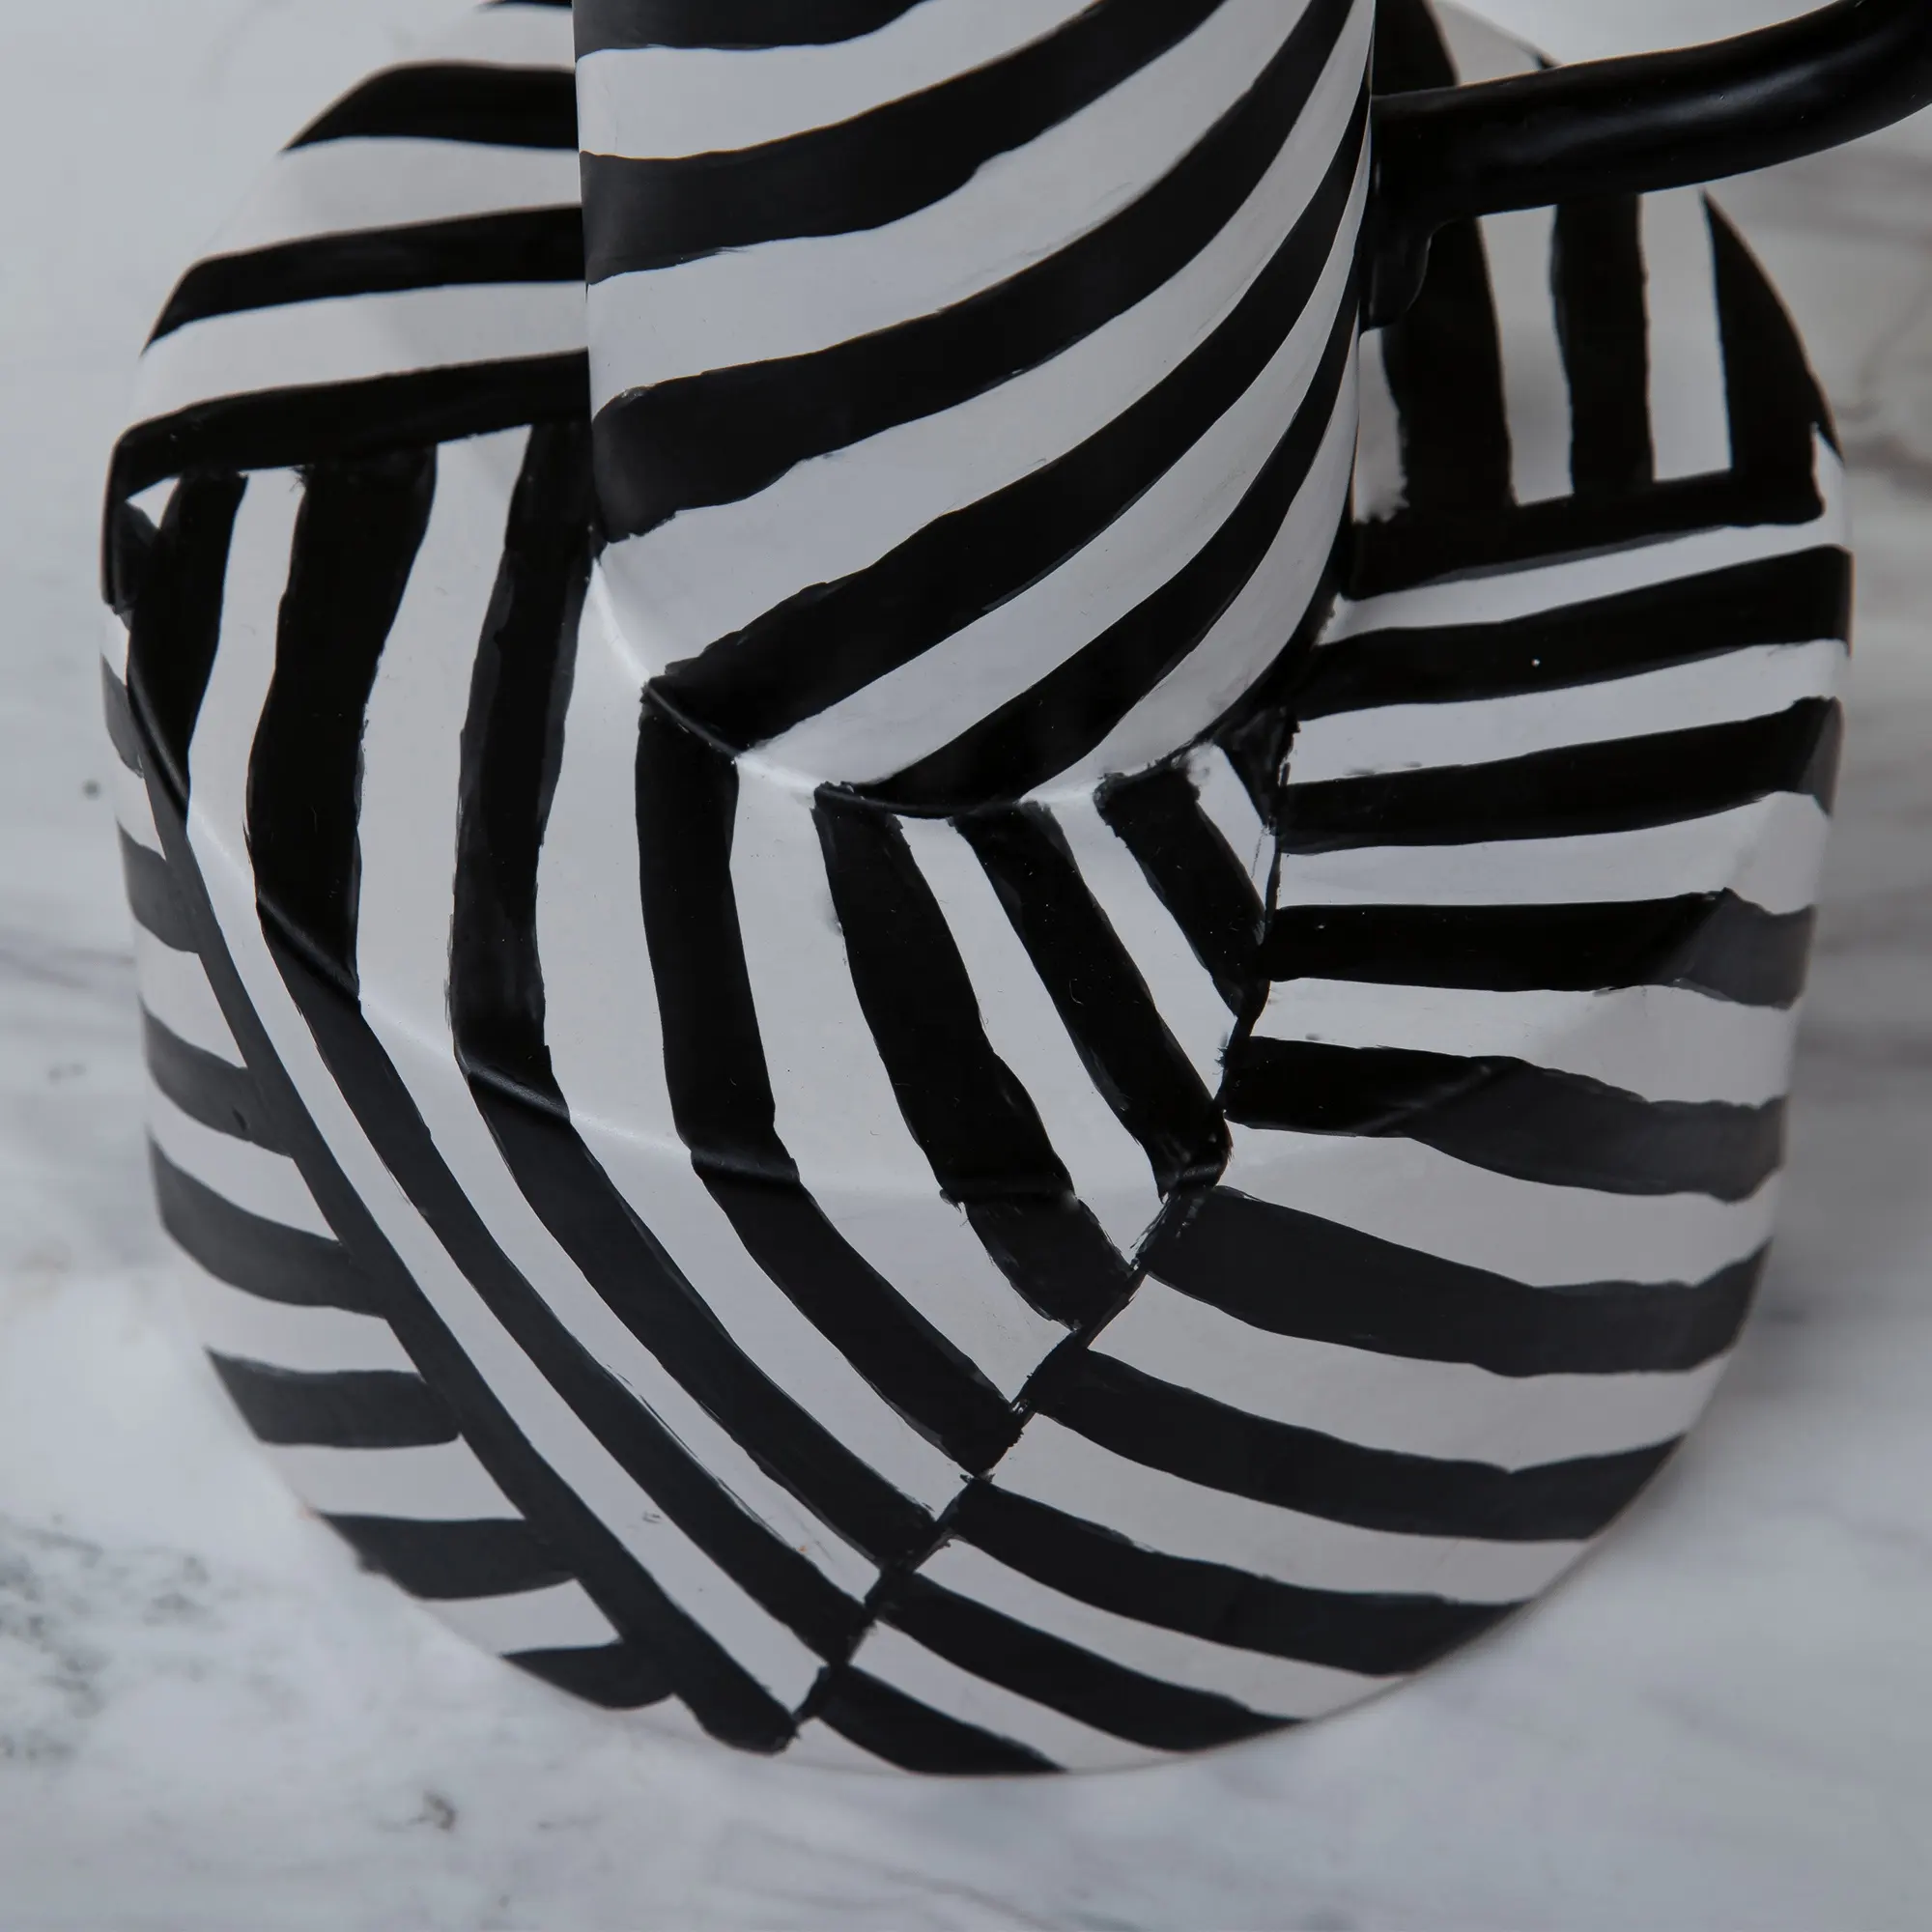 Ceramic Decoration Simple Stripe Black White Ceramic Sculpture Interior Decorative